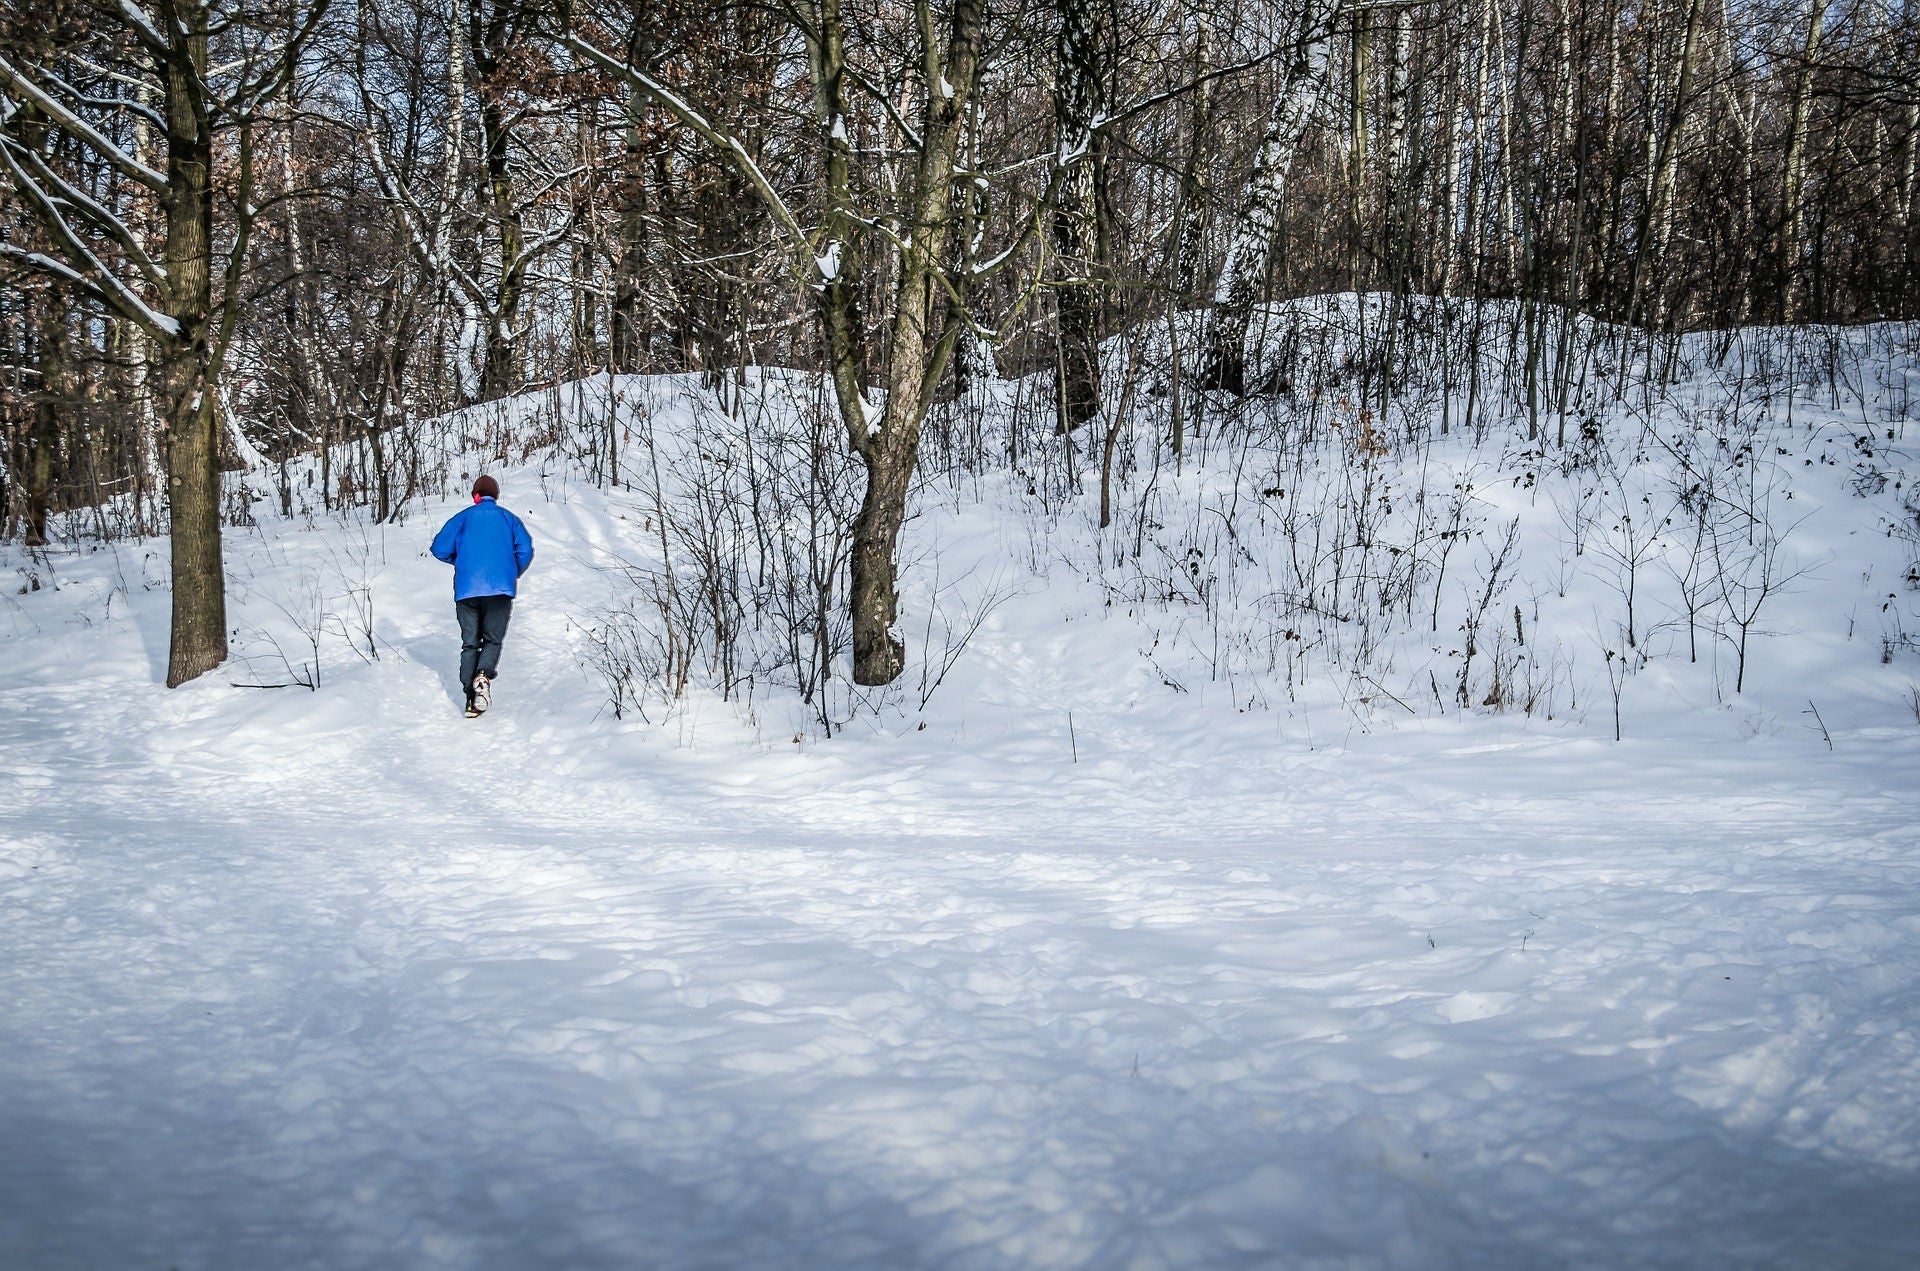 Běhání v zimě může být zábavné, pokud dodržíte několik základních rad.